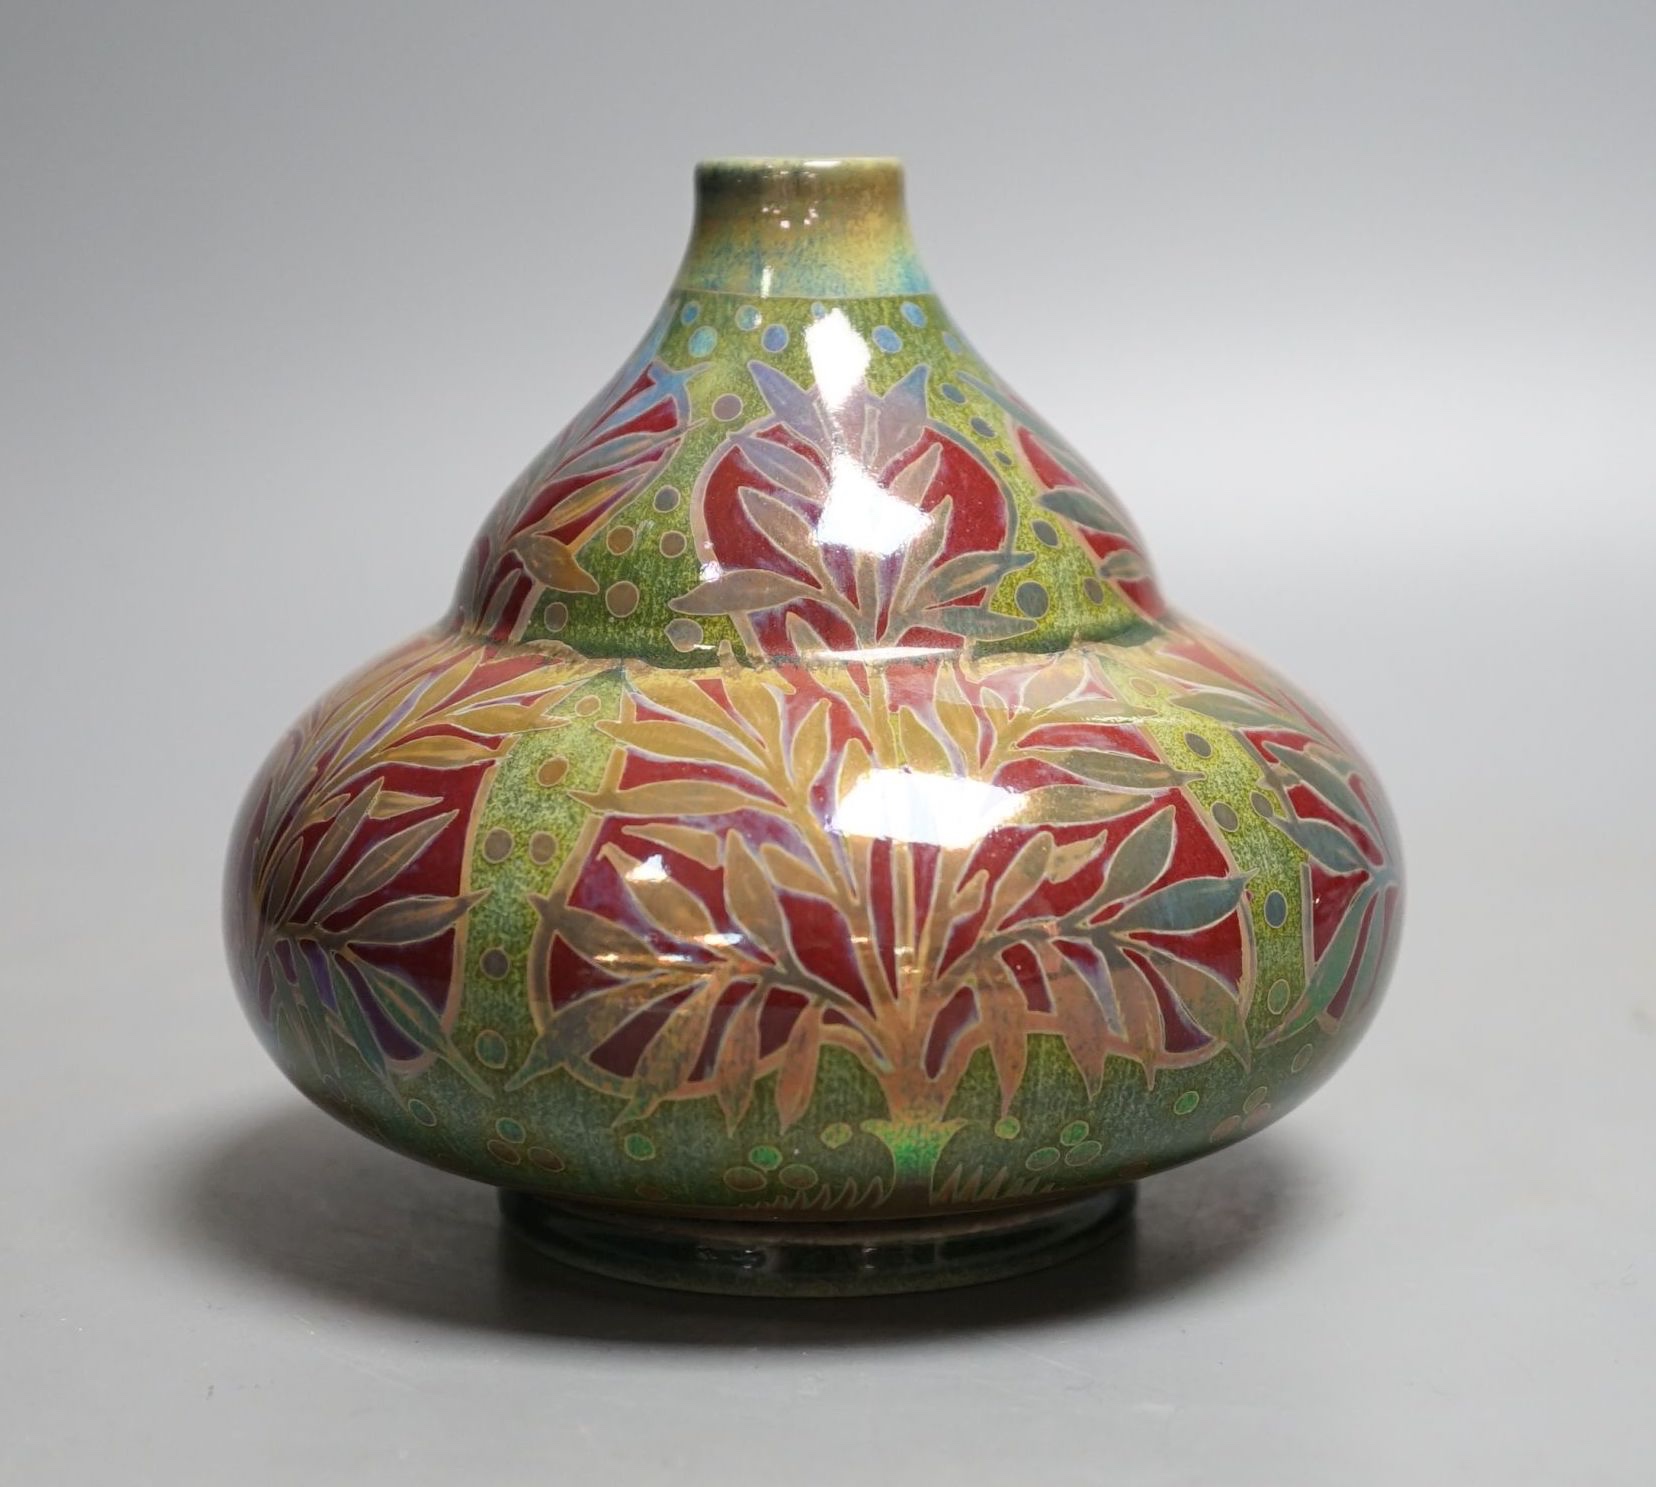 A Pilkingon's Royal Lancastrian lustre vase 11cm - Image 4 of 5